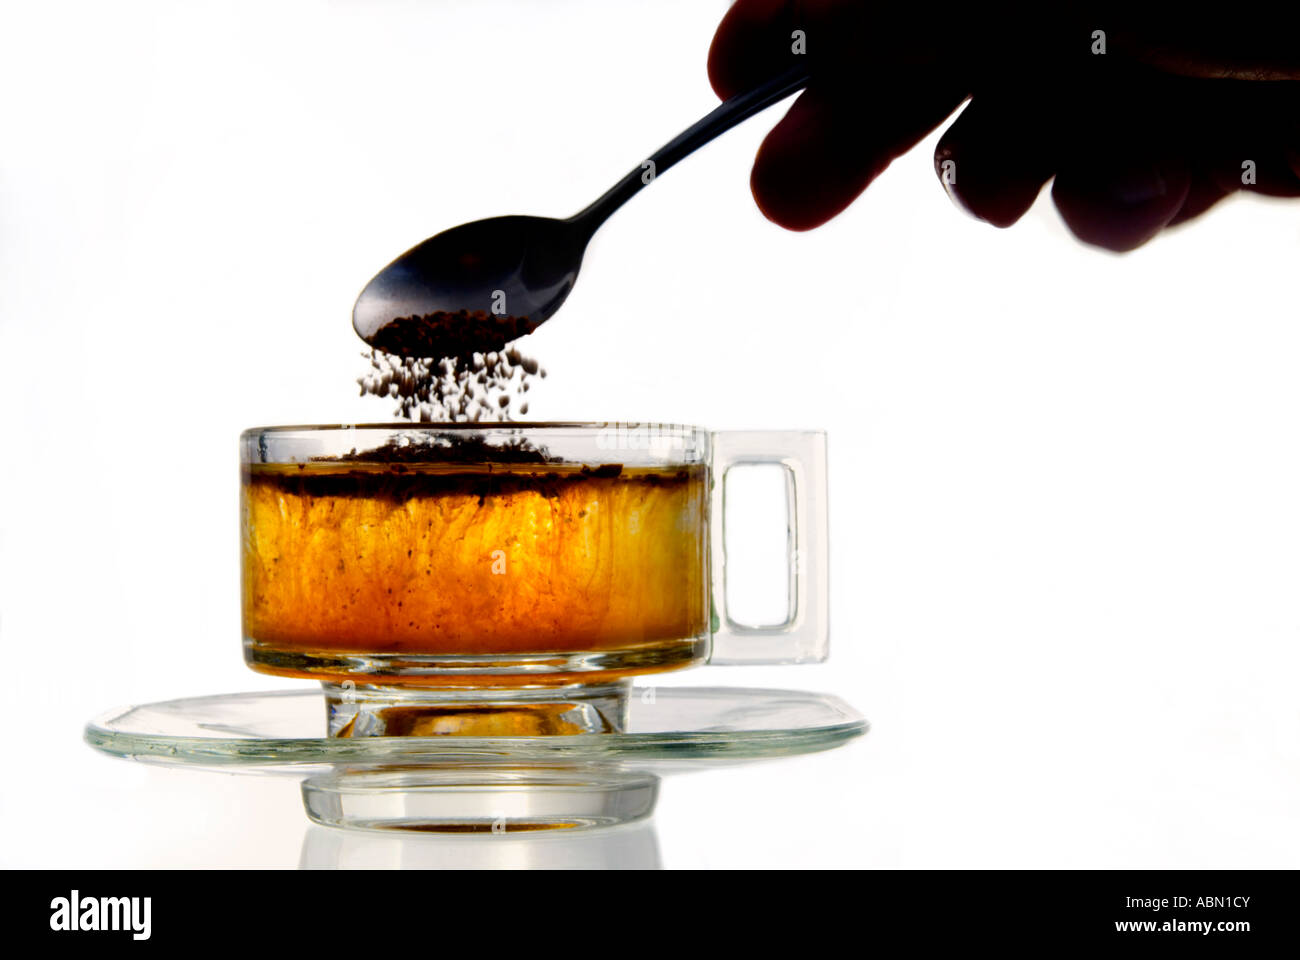 Le café instantané ajouté à l'eau dans une tasse en verre Banque D'Images